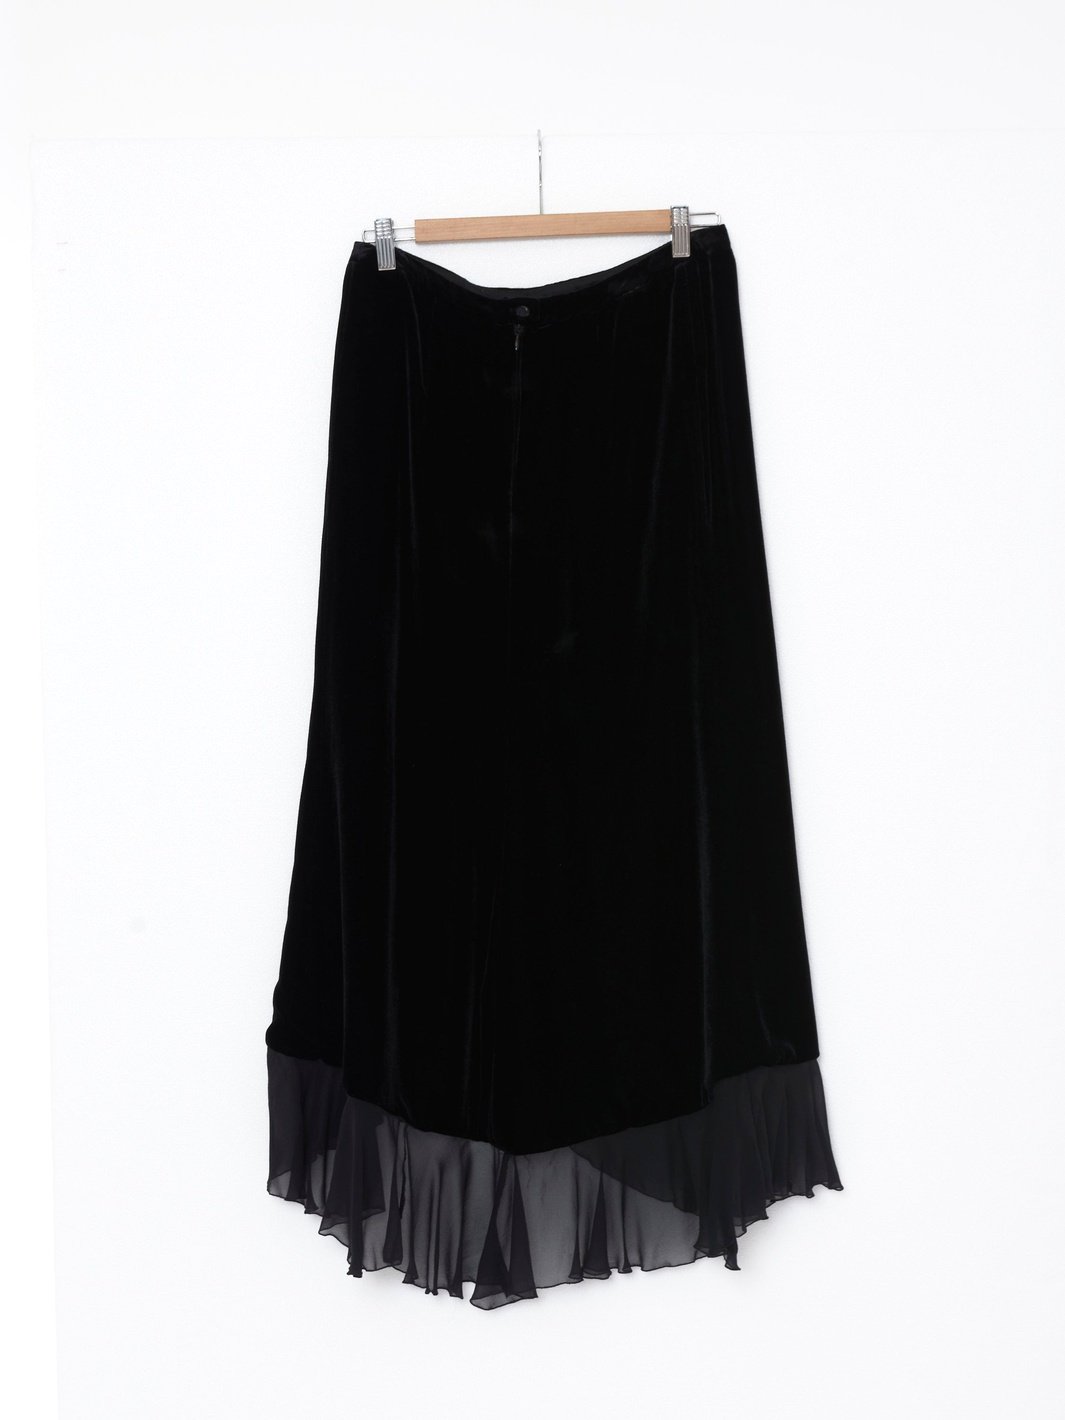 Y2K Armani skirt in black velvet